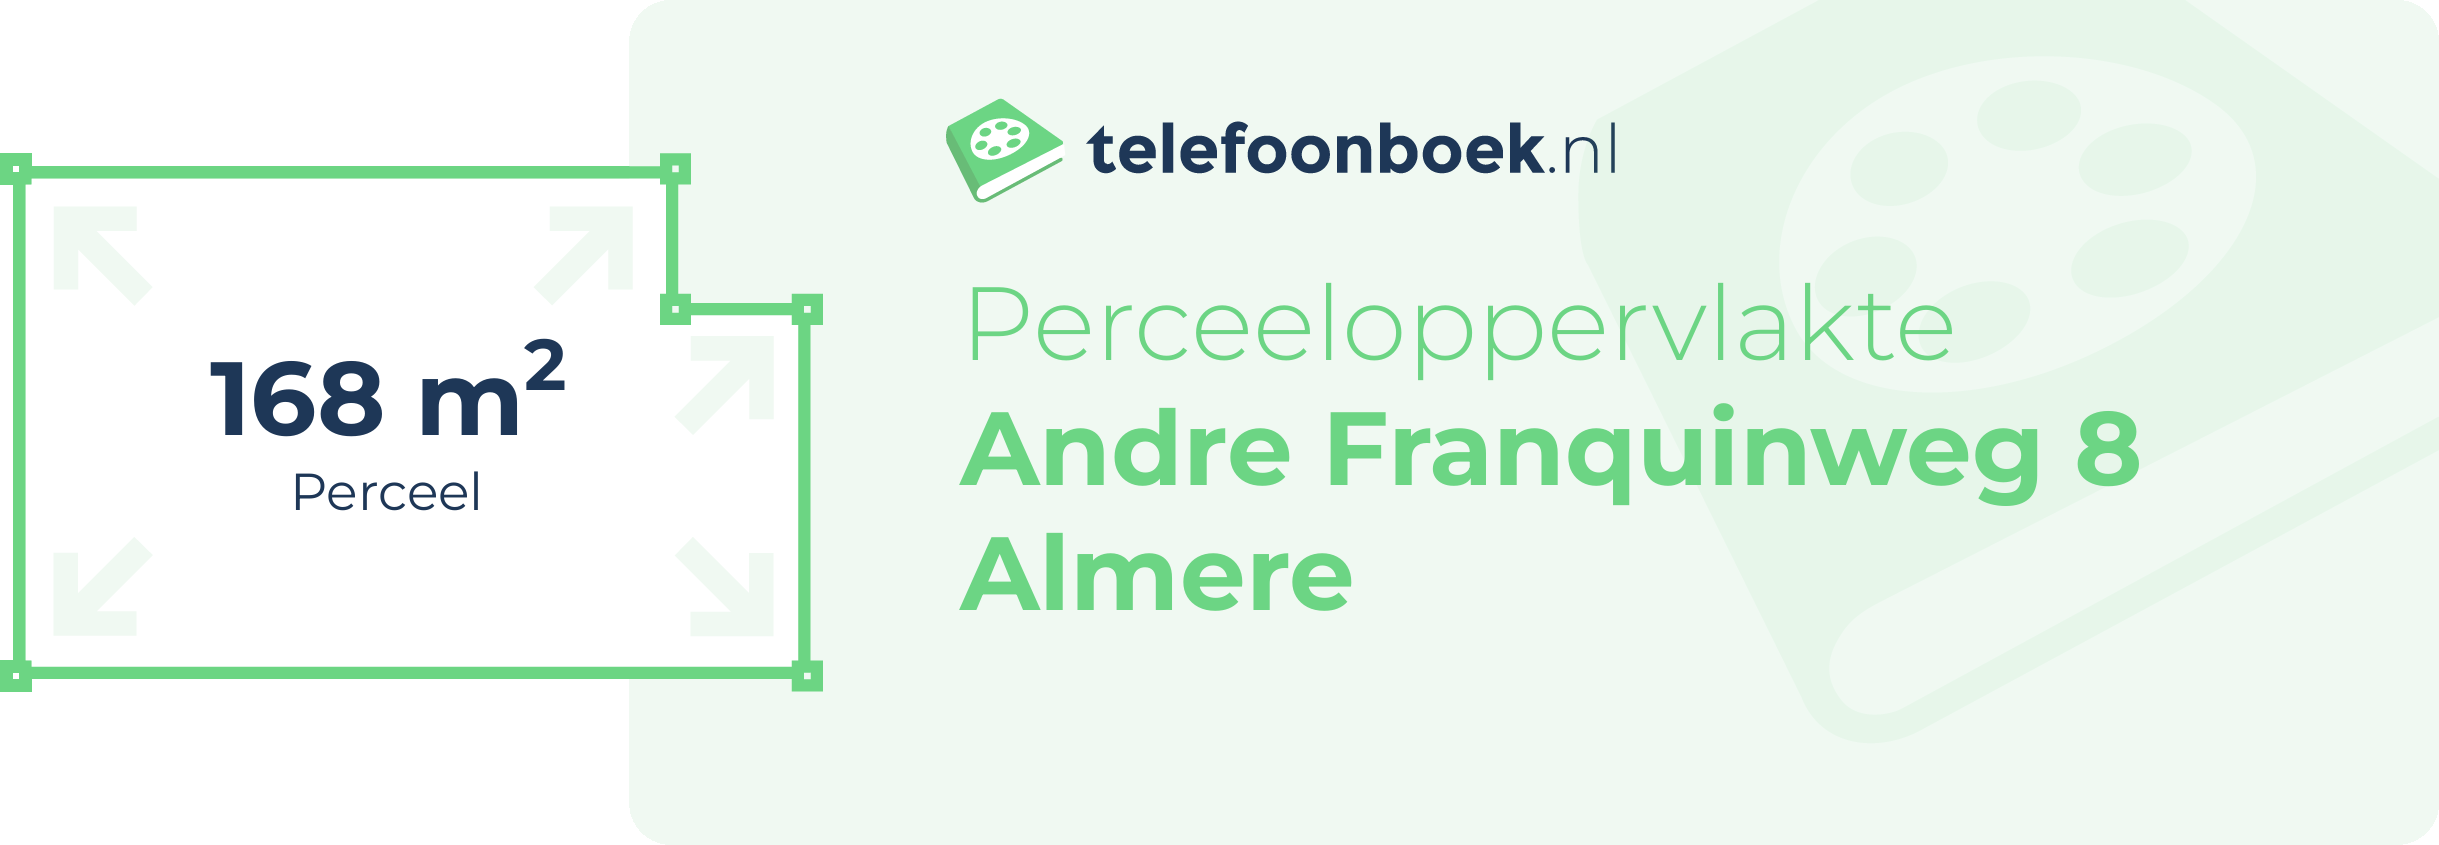 Perceeloppervlakte Andre Franquinweg 8 Almere